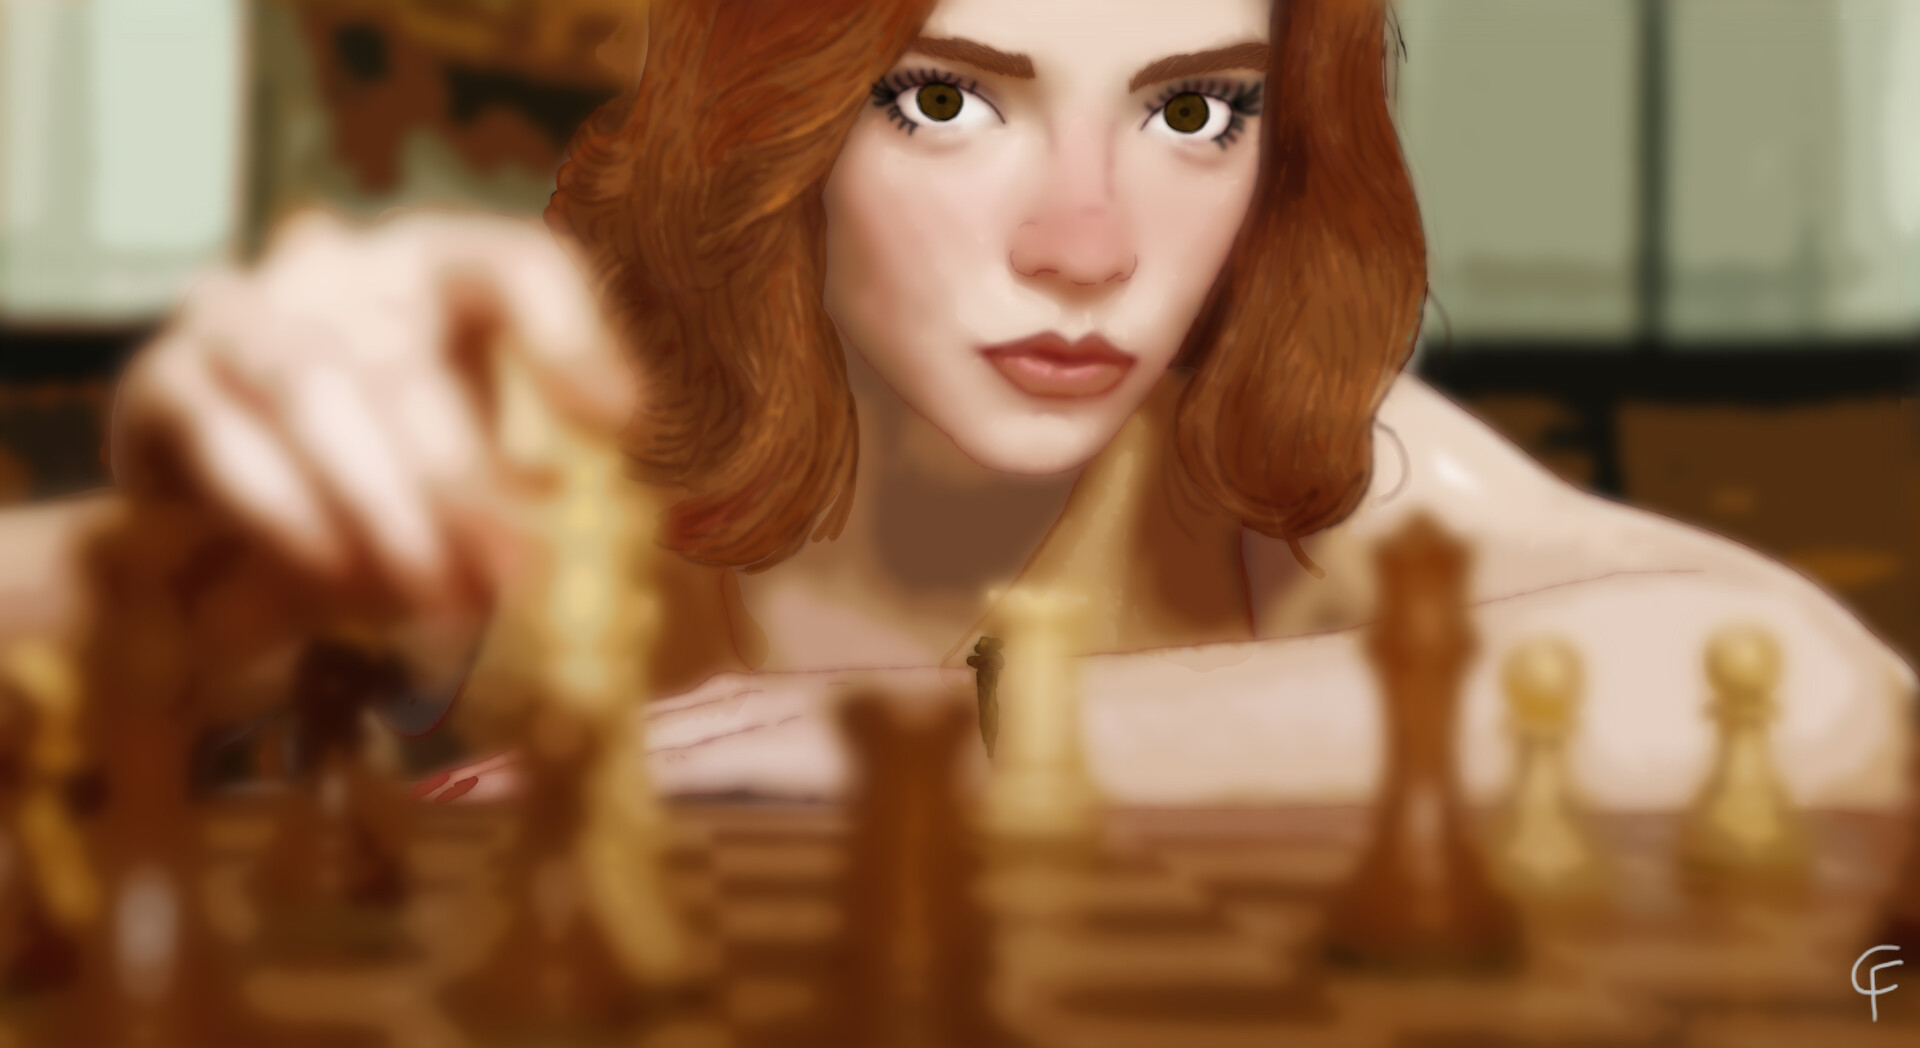 ArtStation - Beth Harmon (The Queen's Gambit)